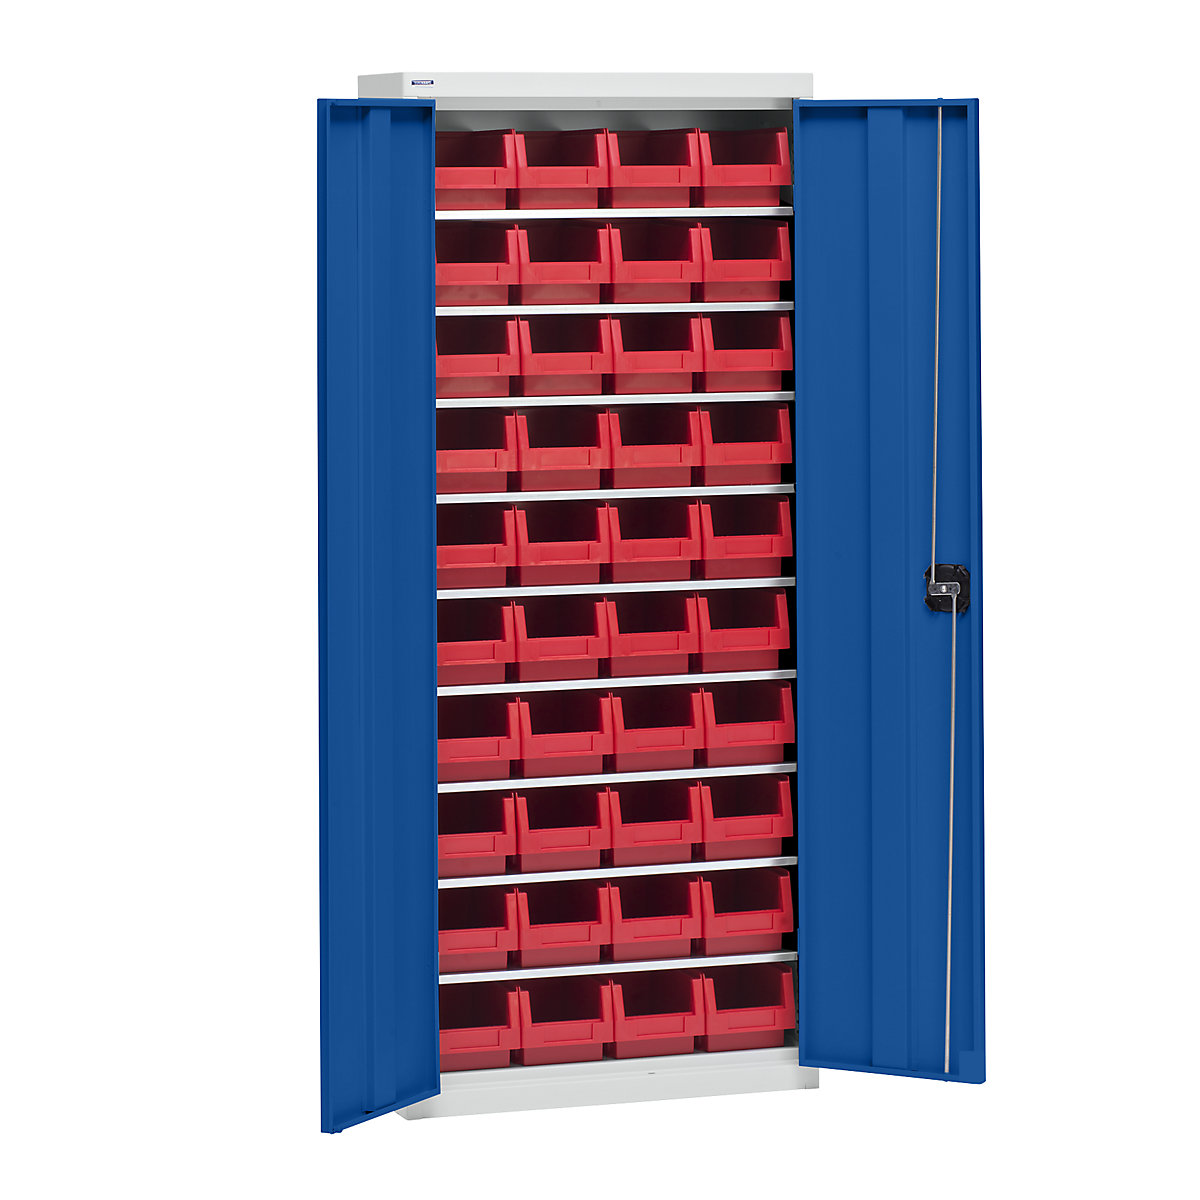 Materiaalkast met magazijnbakken – eurokraft pro, hoogte 1575 mm, 9 legborden, lichtgrijs / gentiaanblauw-6